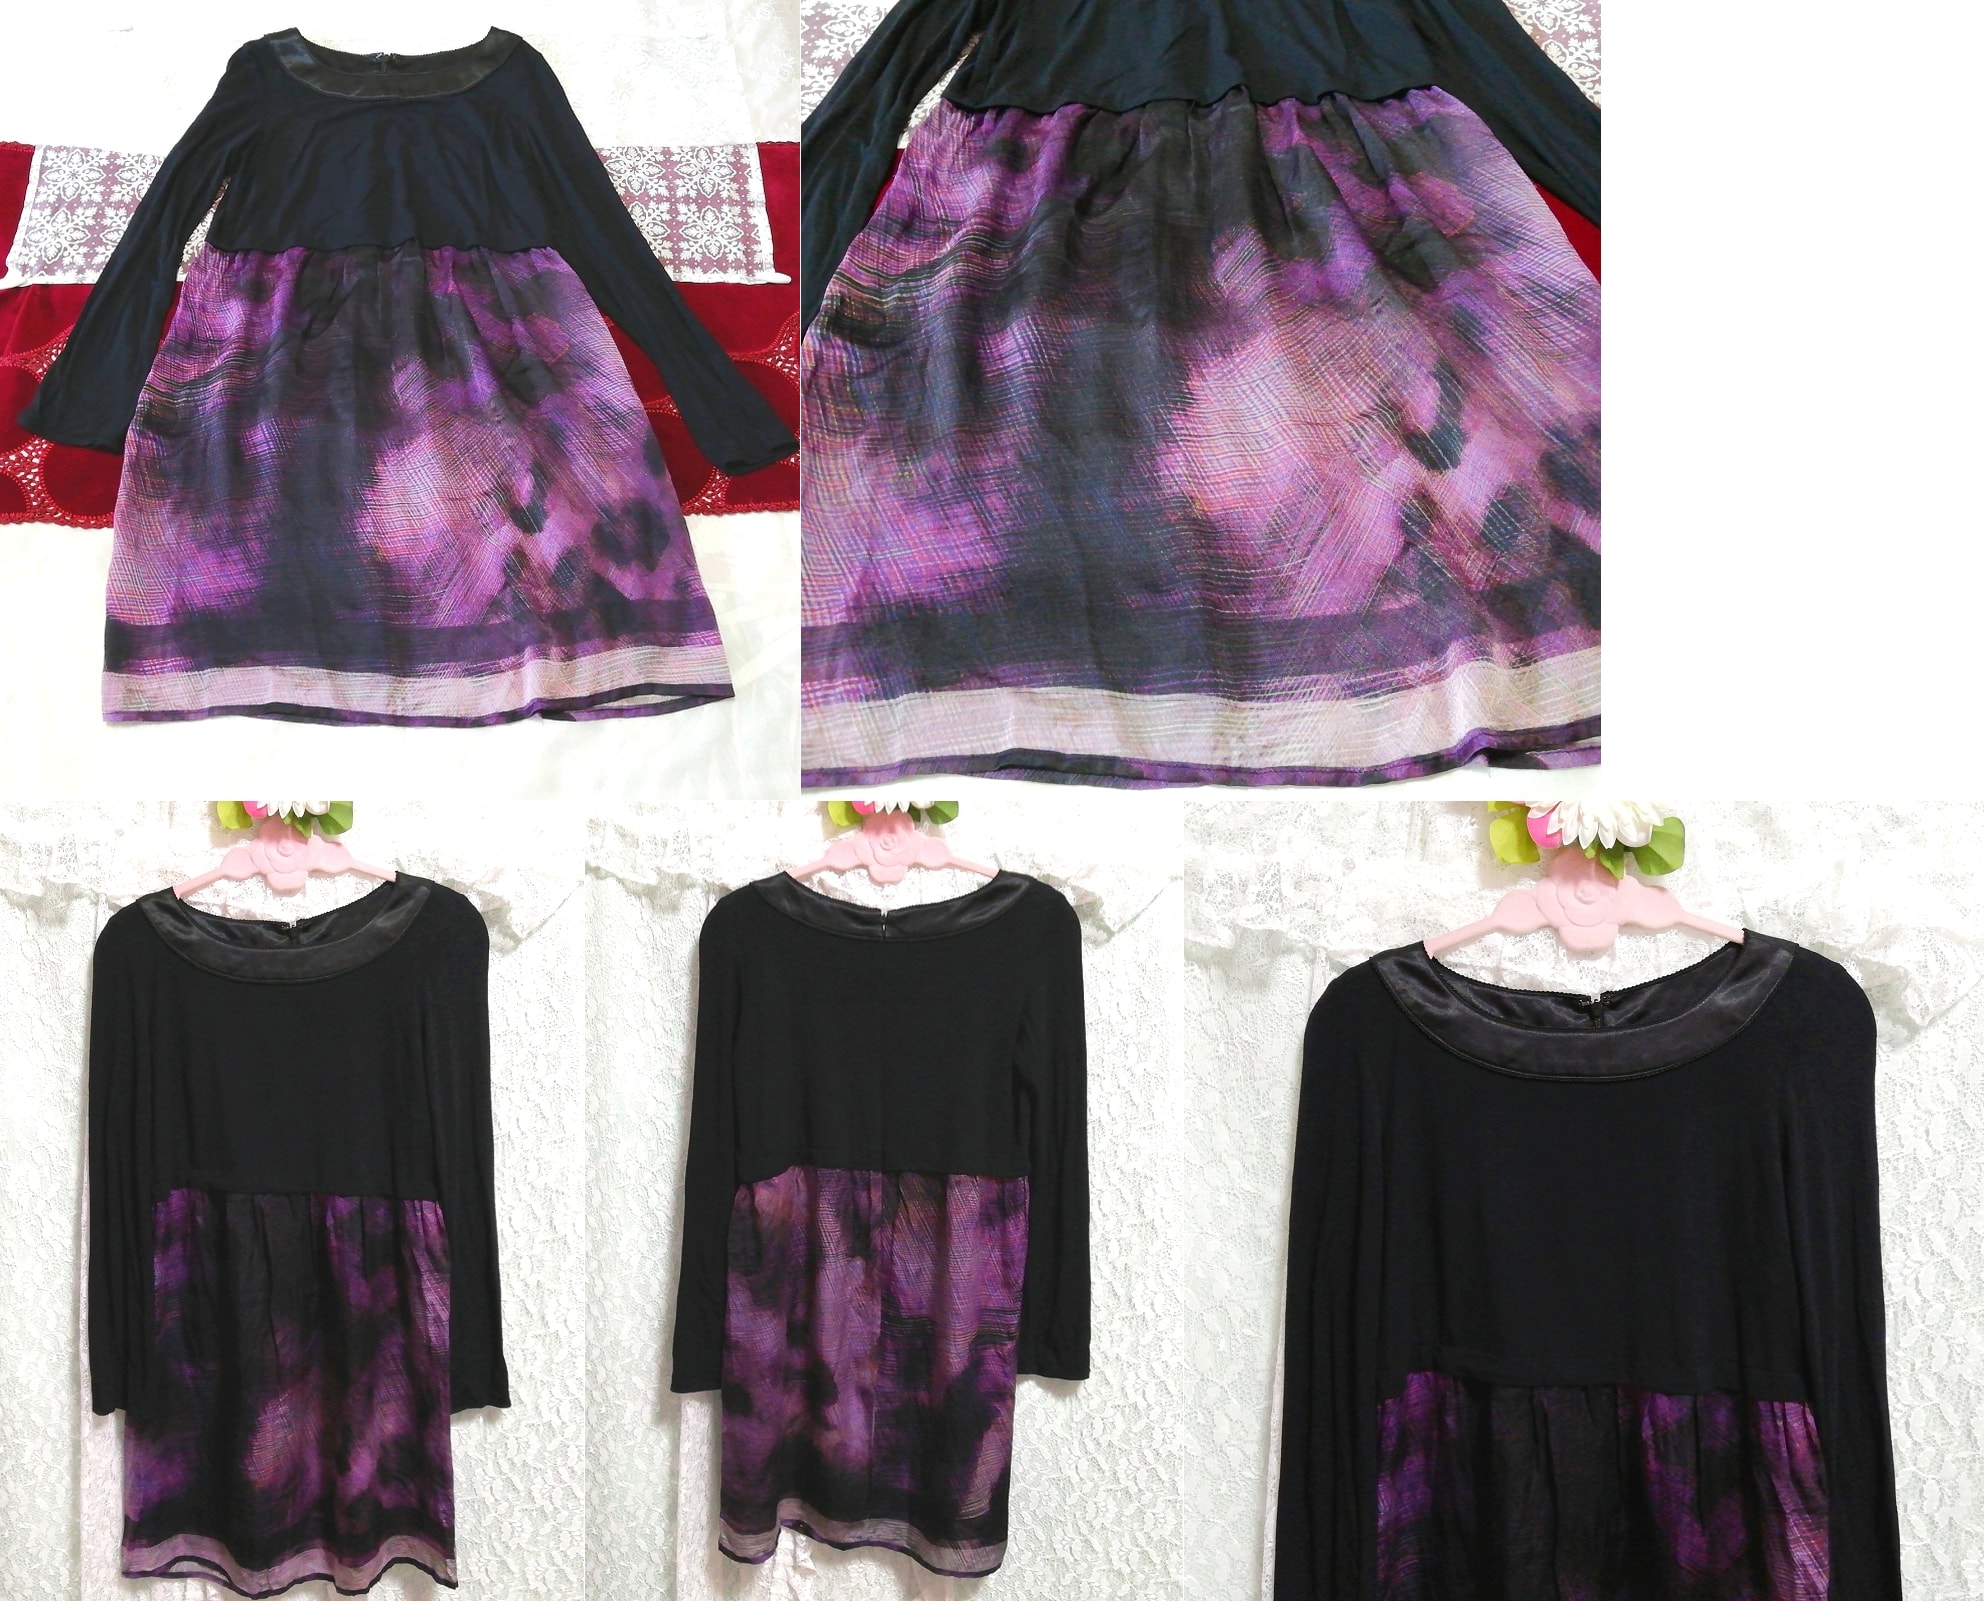 Black purple chiffon silk silk art pattern skirt long sleeve tunic negligee nightgown dress, tunic, long sleeve, m size